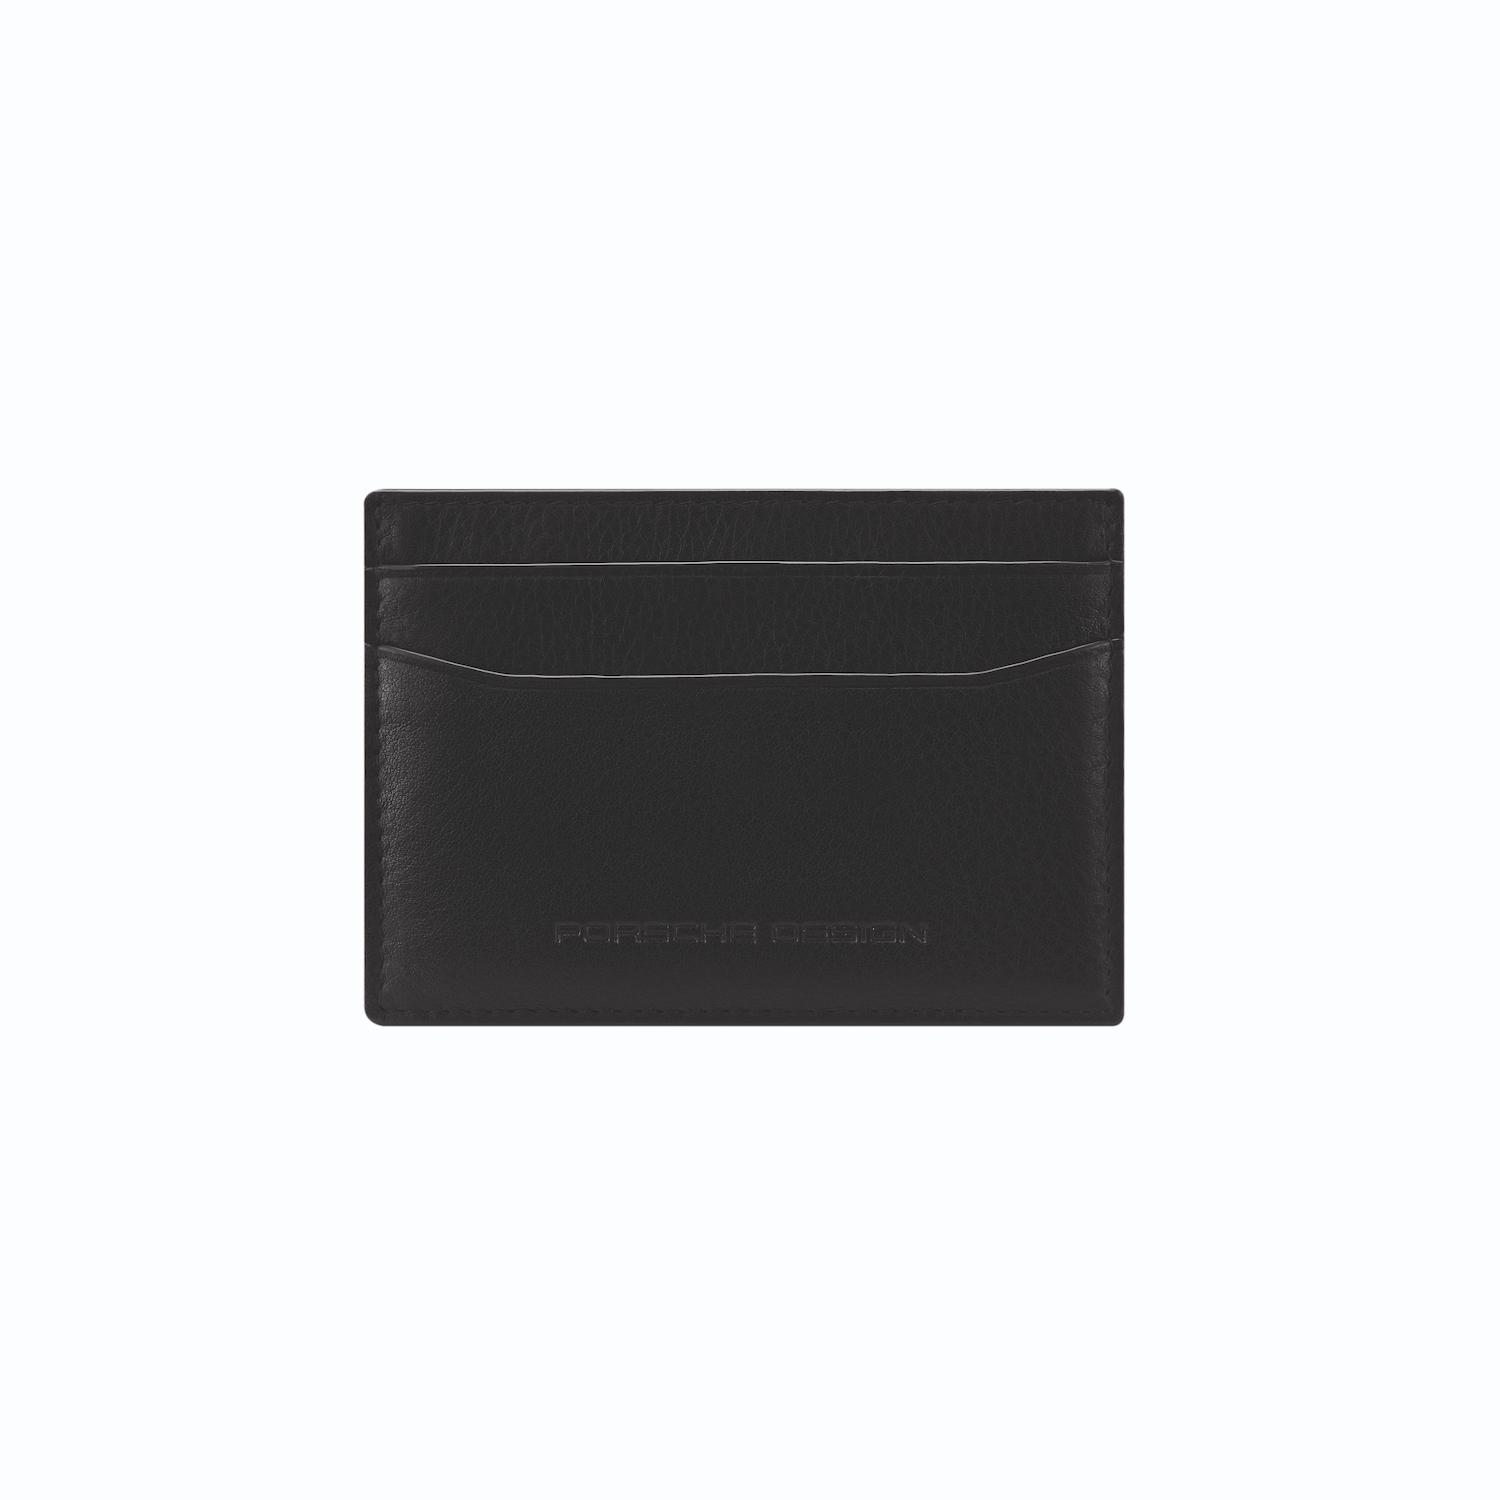 Pd Business Slg Cardholder 2 CC Clip by Brics (Color: Black)